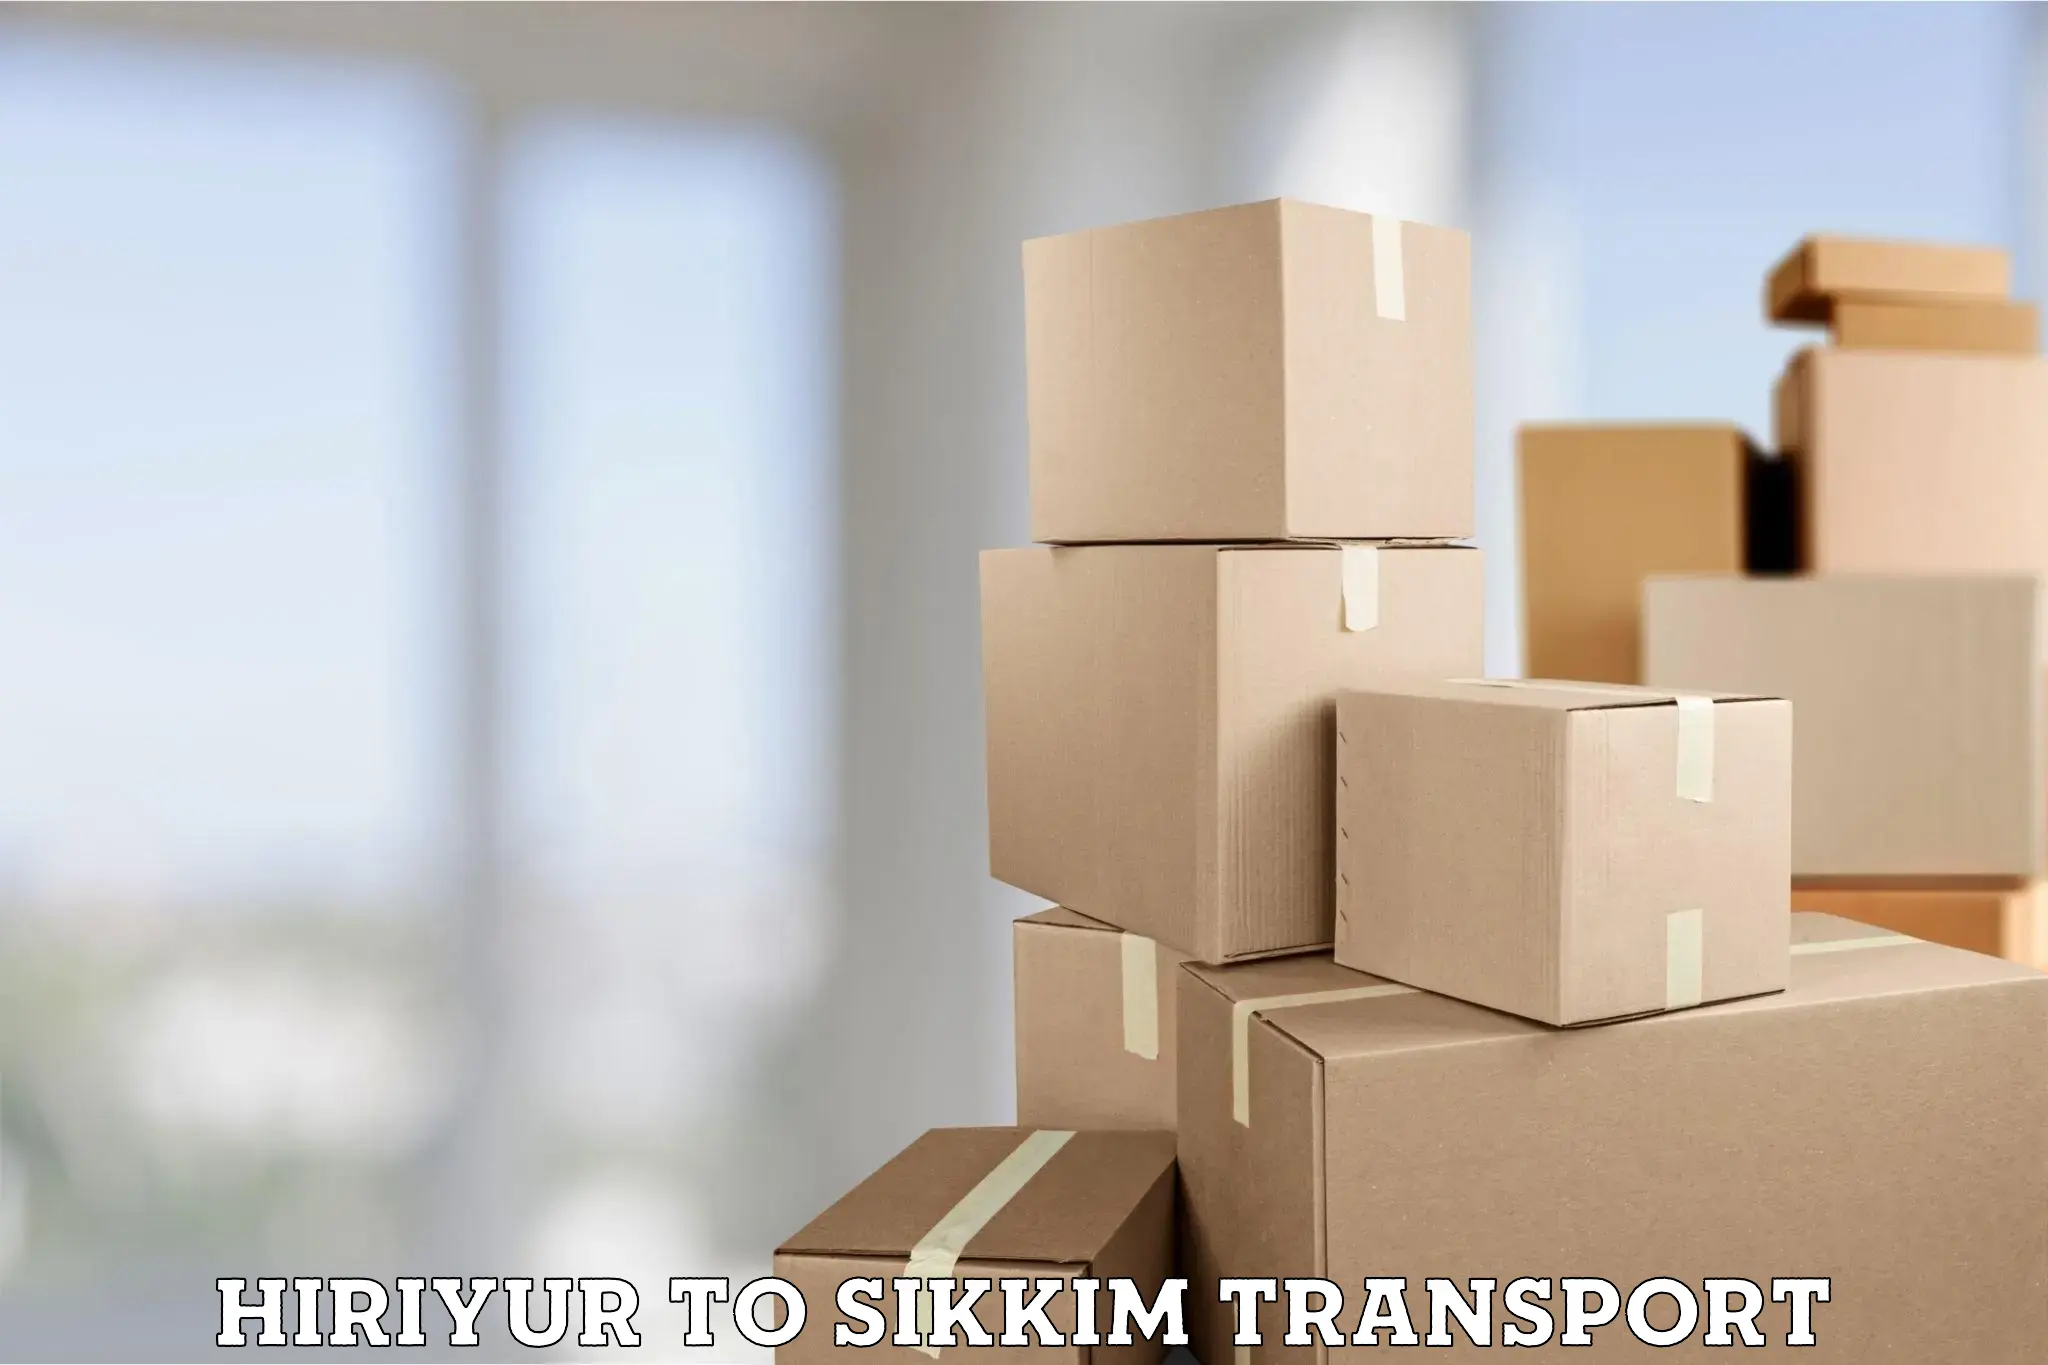 Online transport service Hiriyur to Mangan